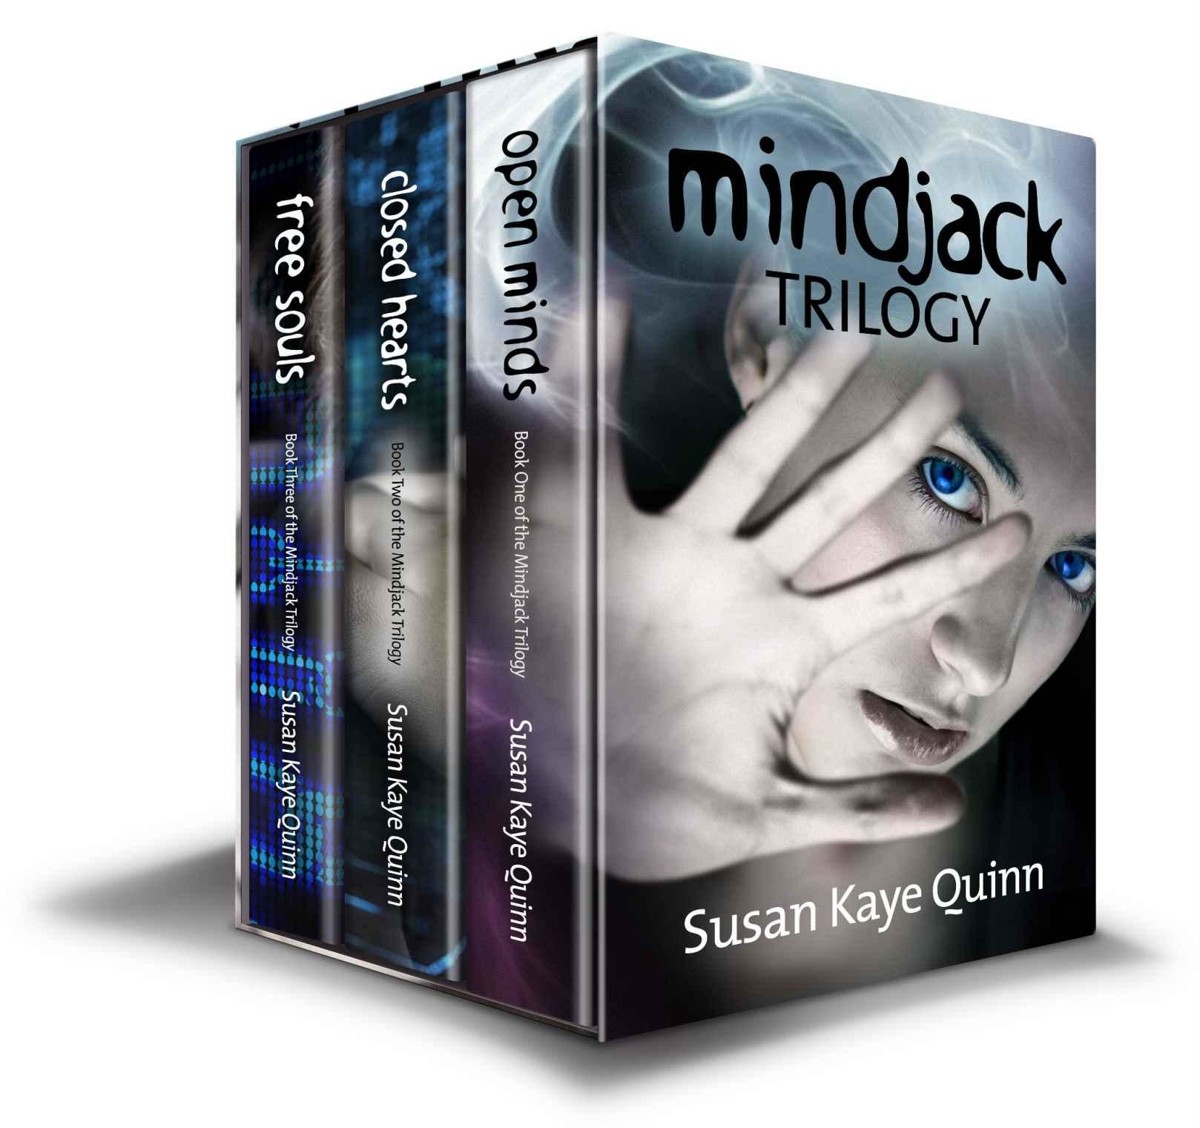 Mindjack Trilogy Digital Box Set